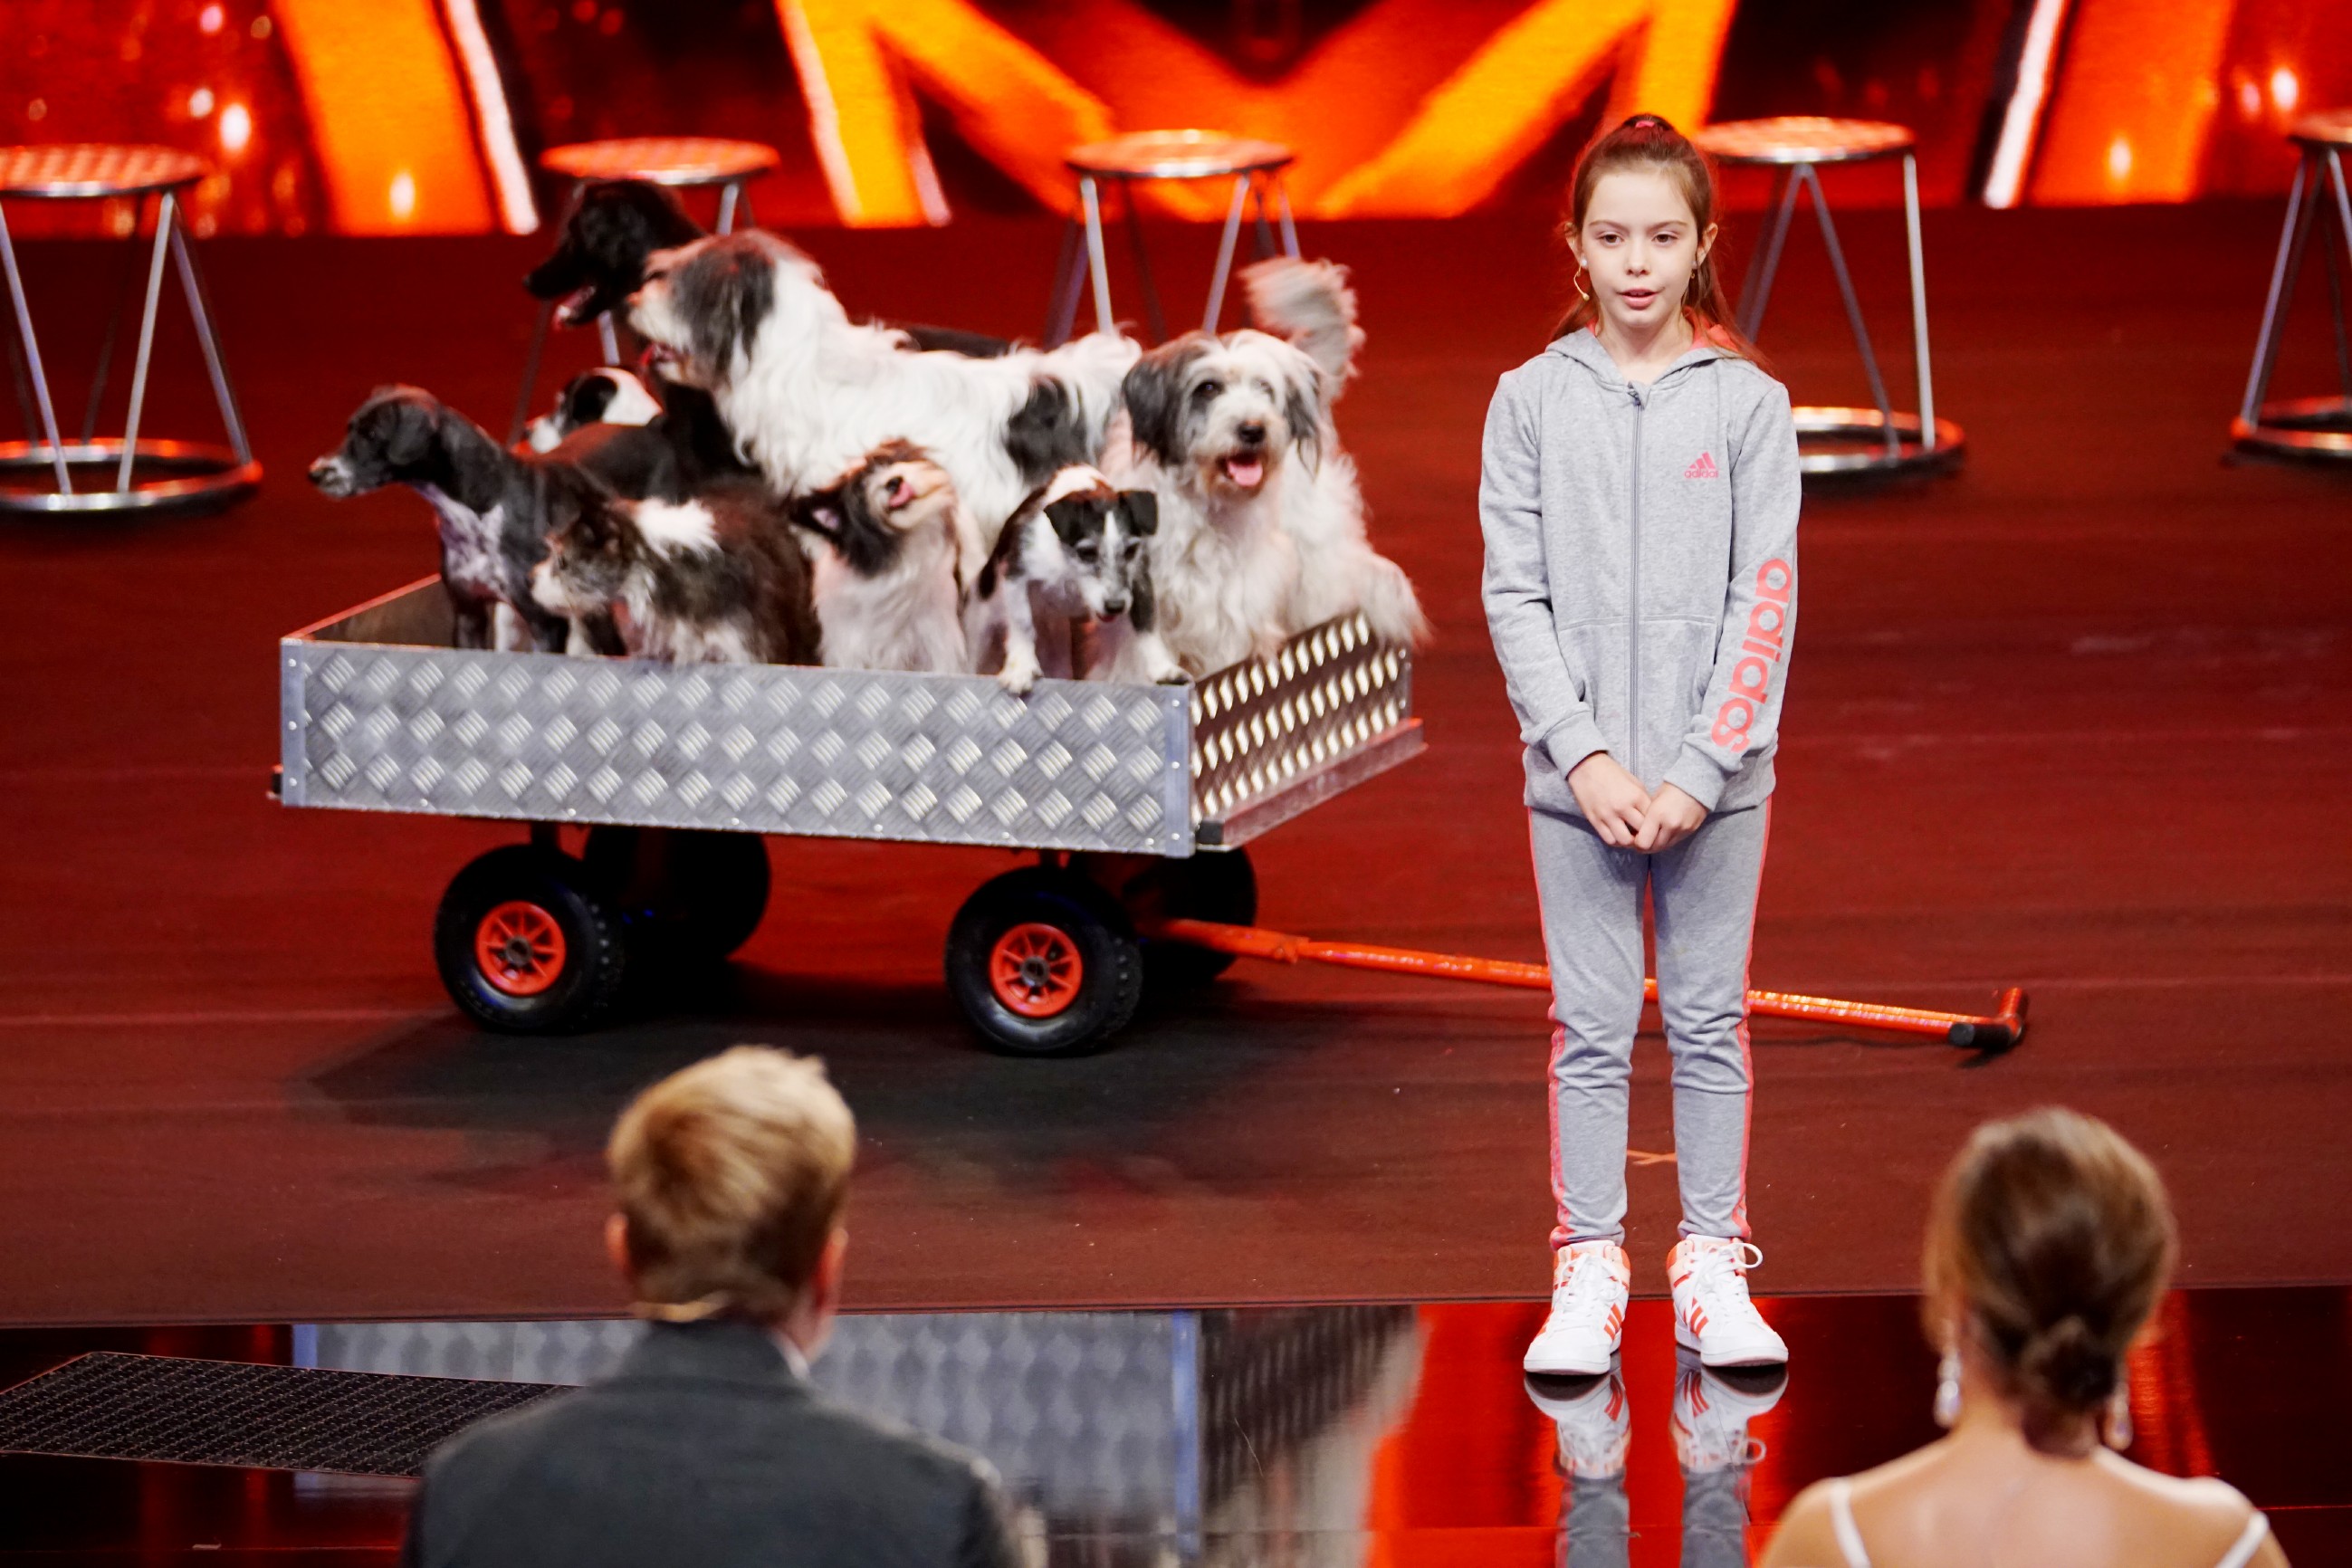 Siegerin bei "Das Supertalent 2017" wurde die erst 10-jährige Alexa Lauenburger